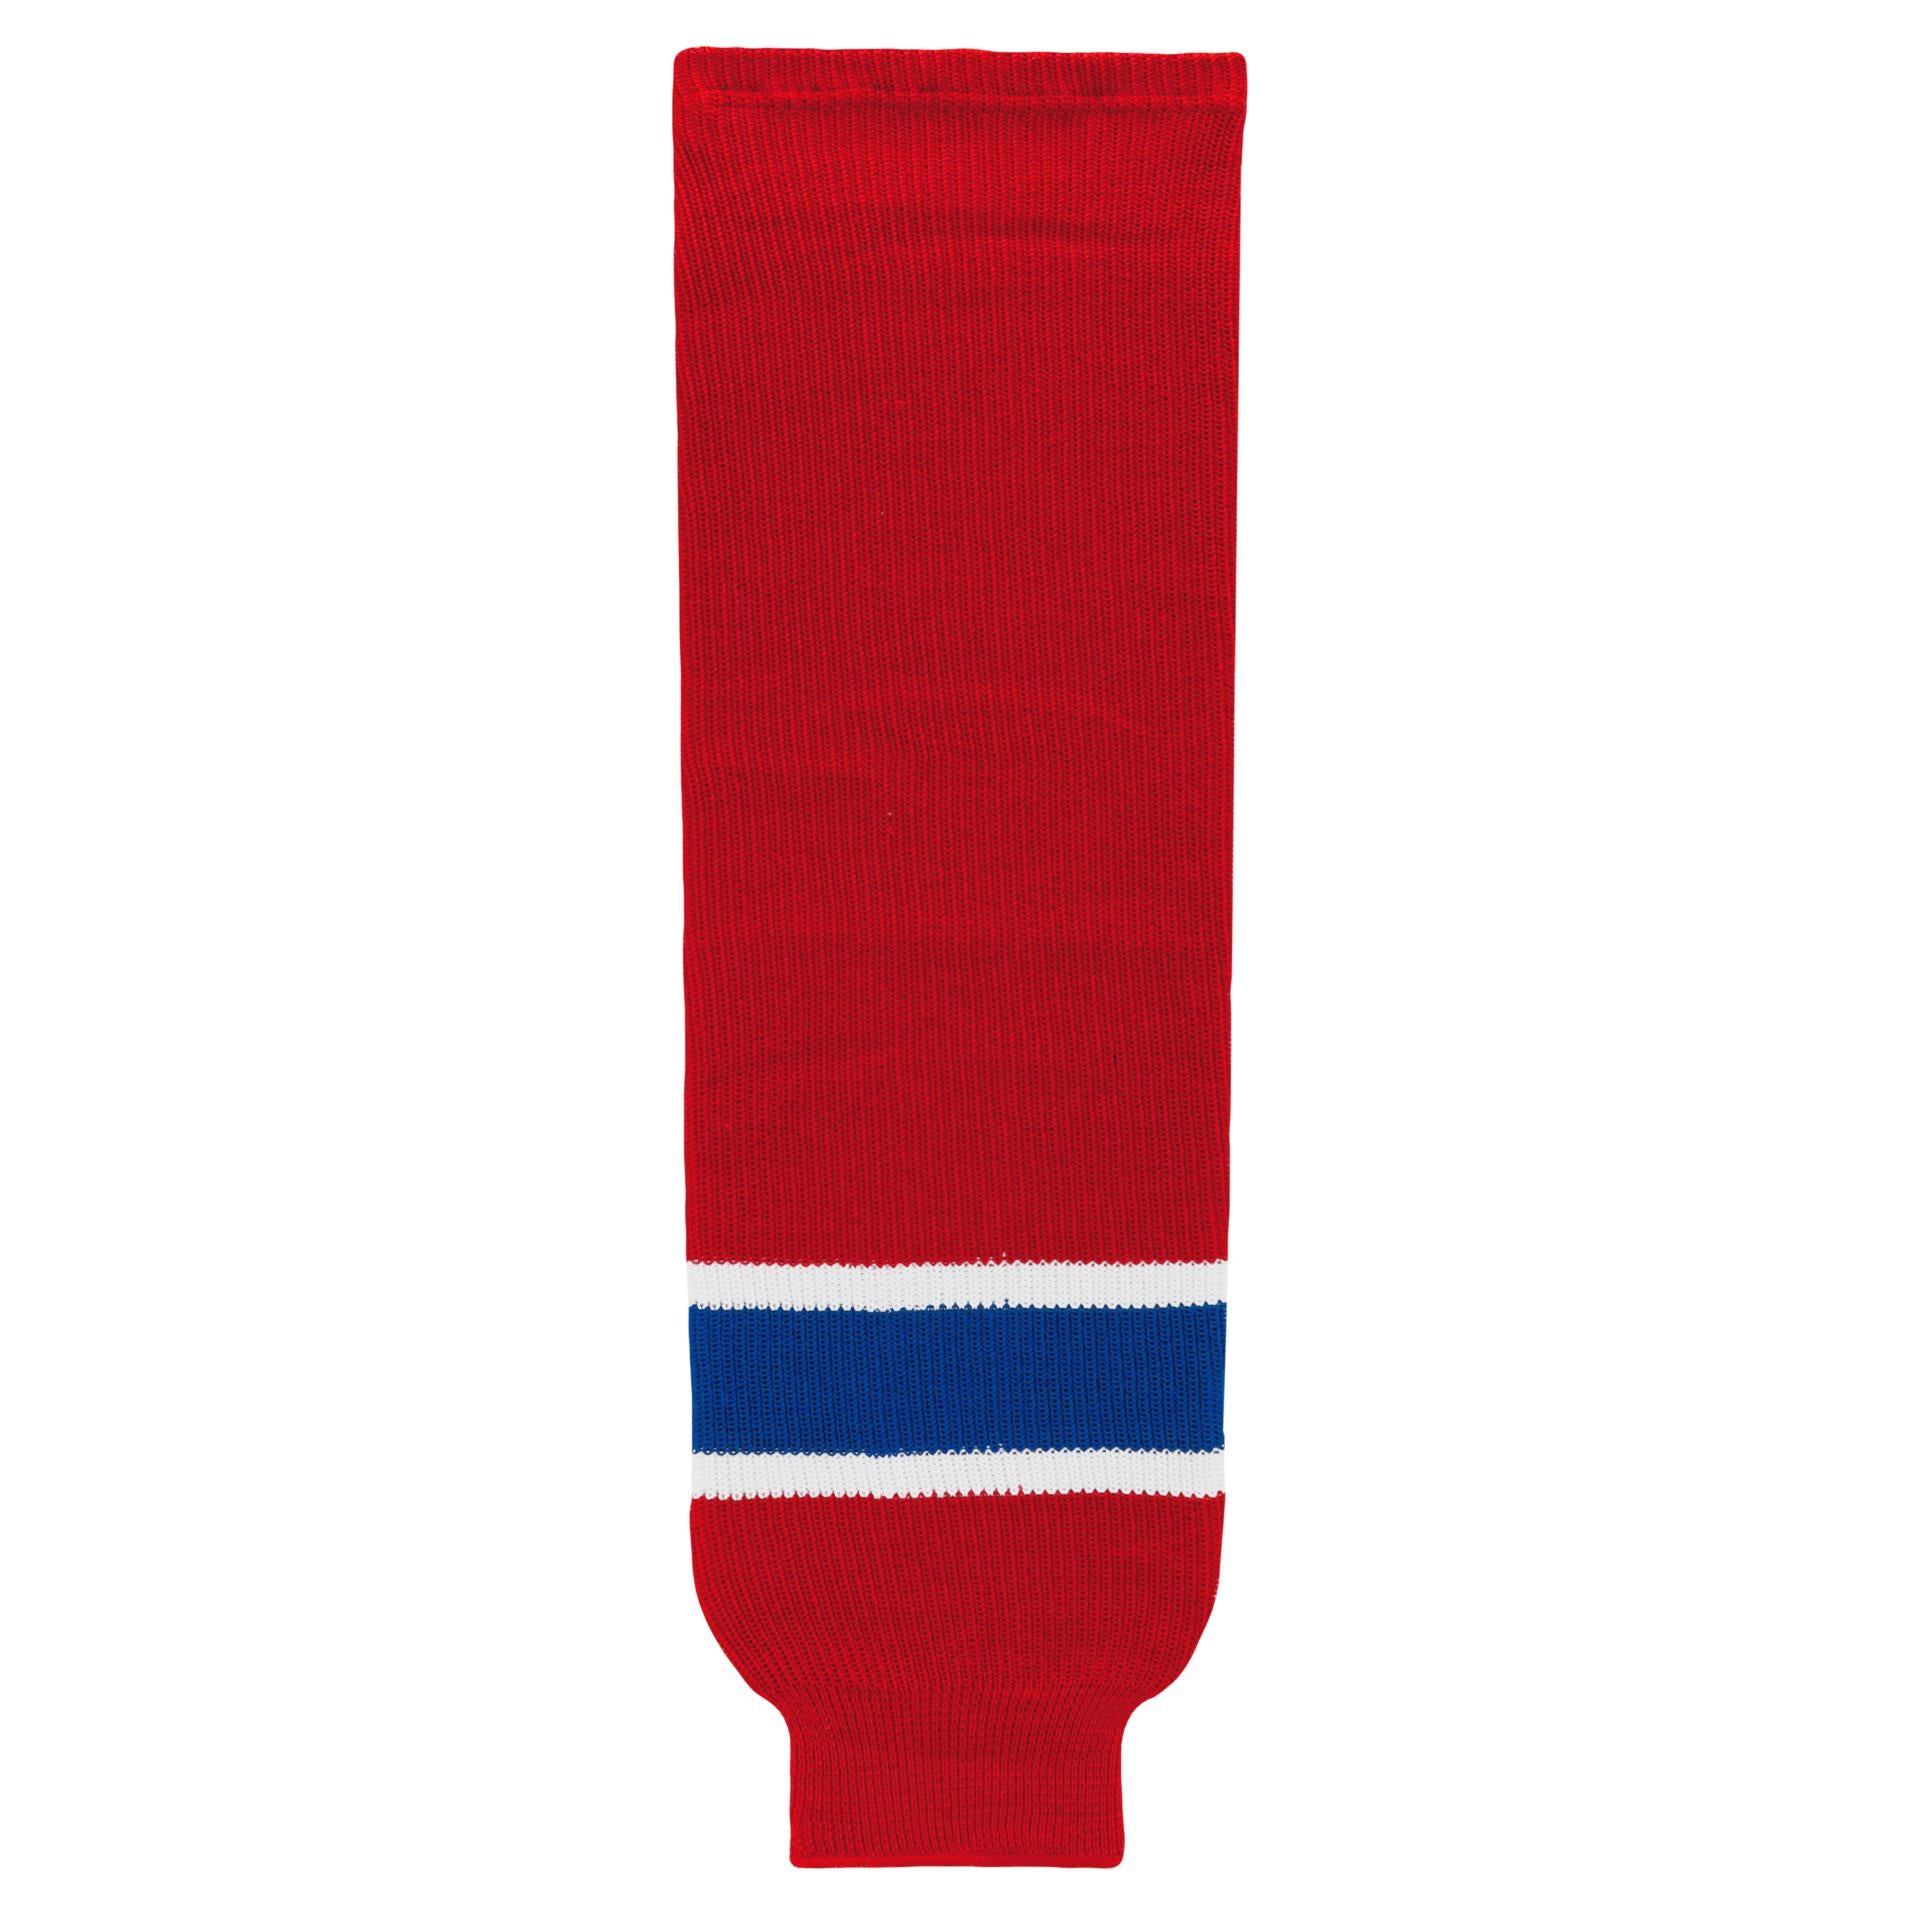 HS630-308 Montreal Canadiens Hockey Socks (Pair)